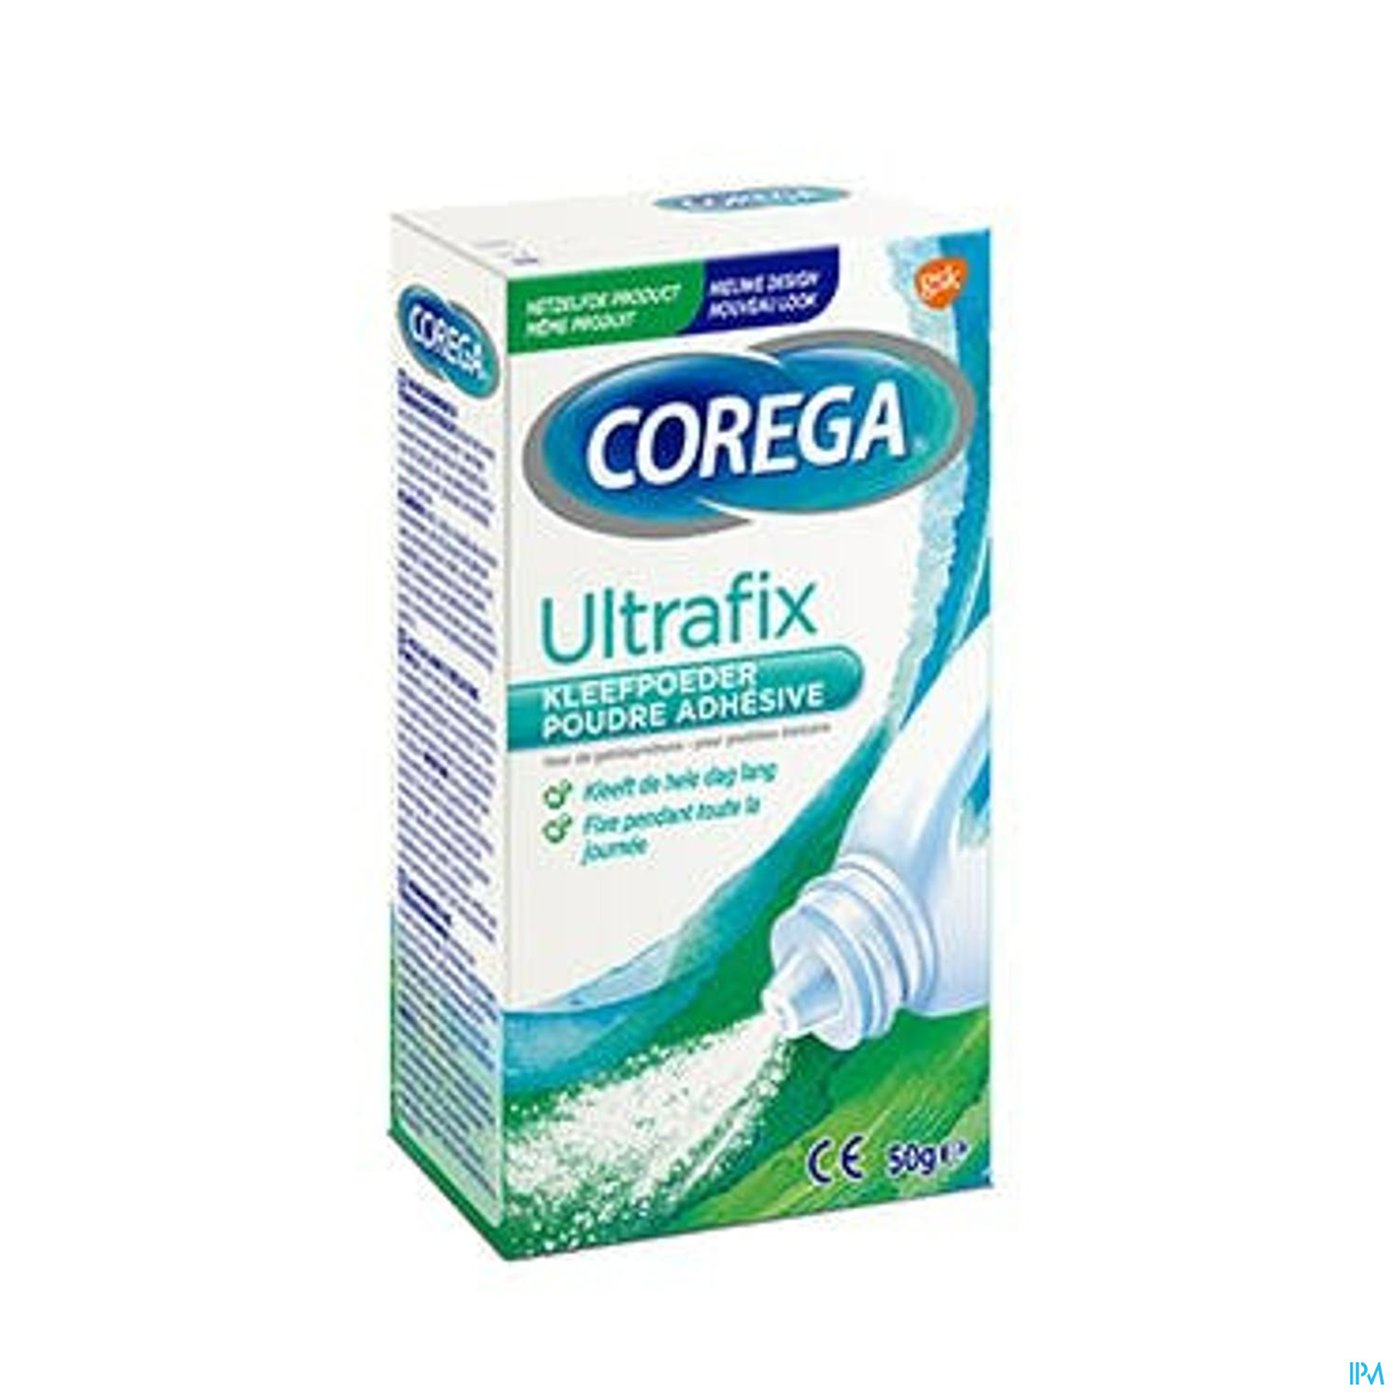 Corega Ultrafix Kleefpoeder Nf 50g packshot